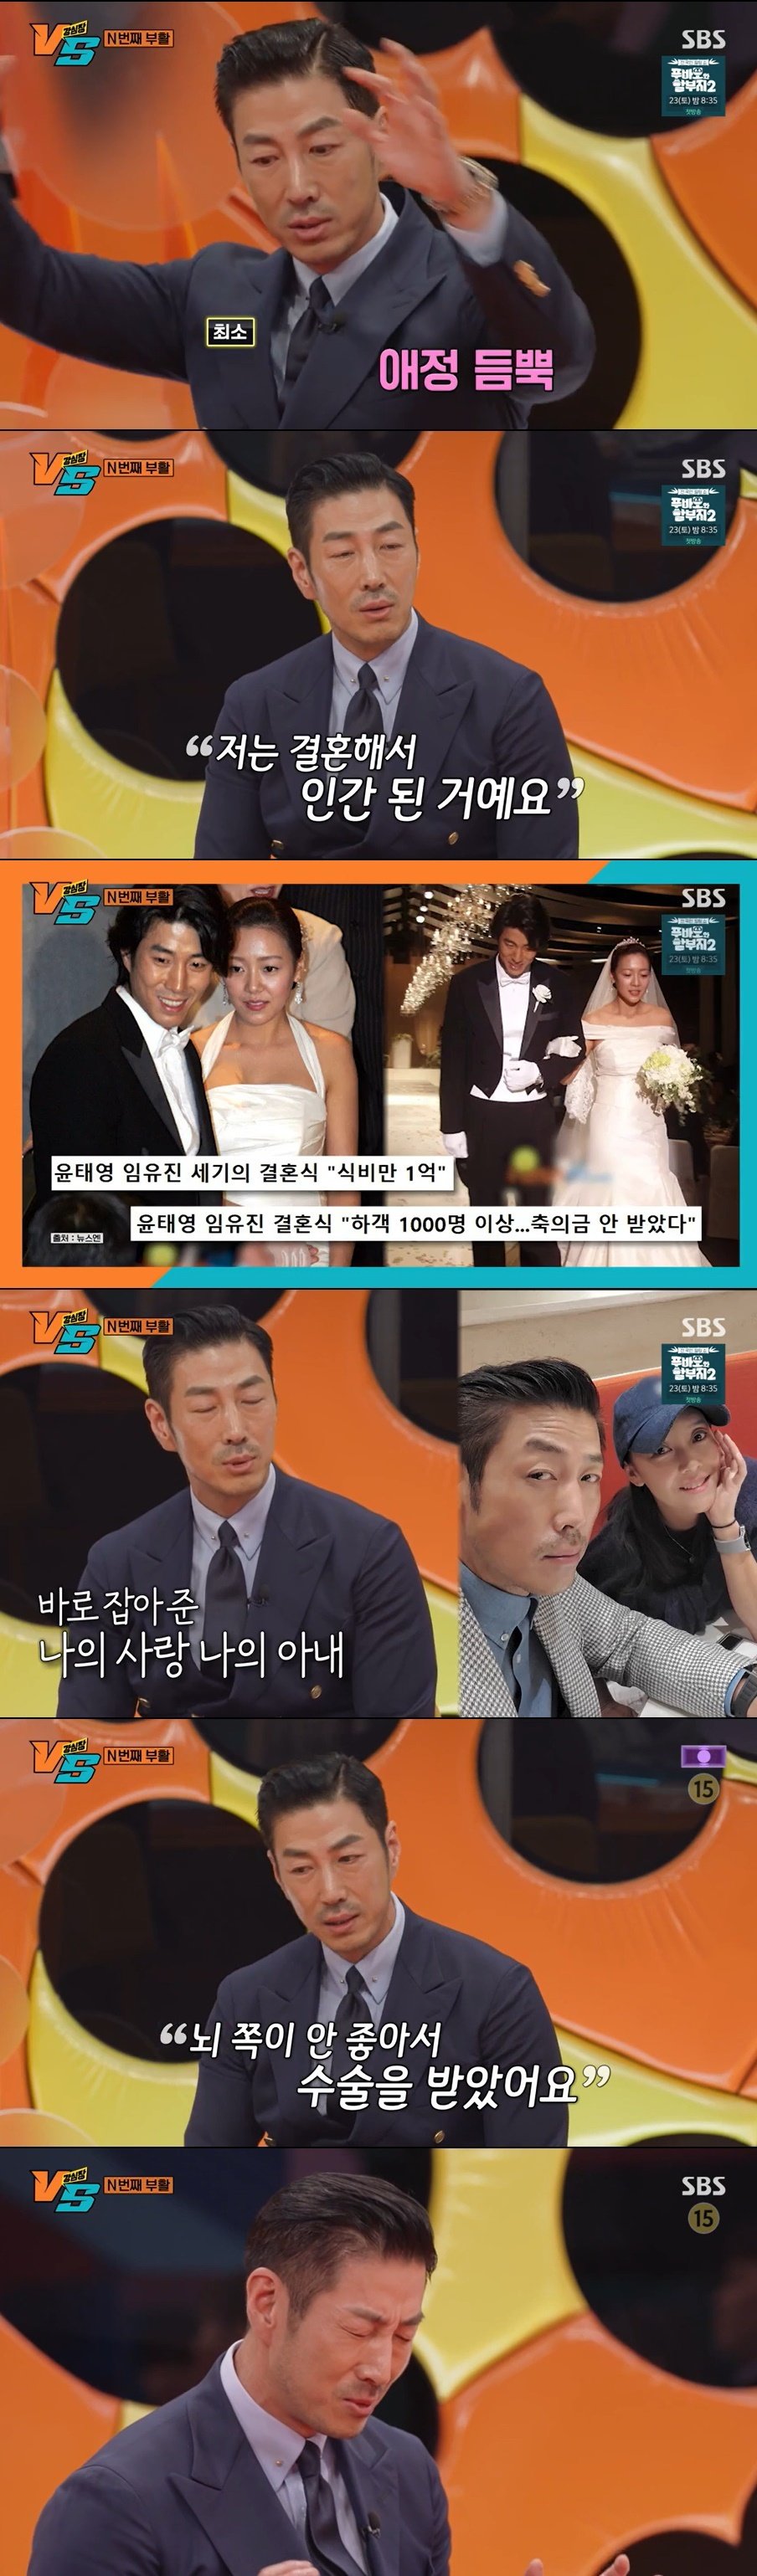 ‘강심장 VS’ 방송화면 캡처